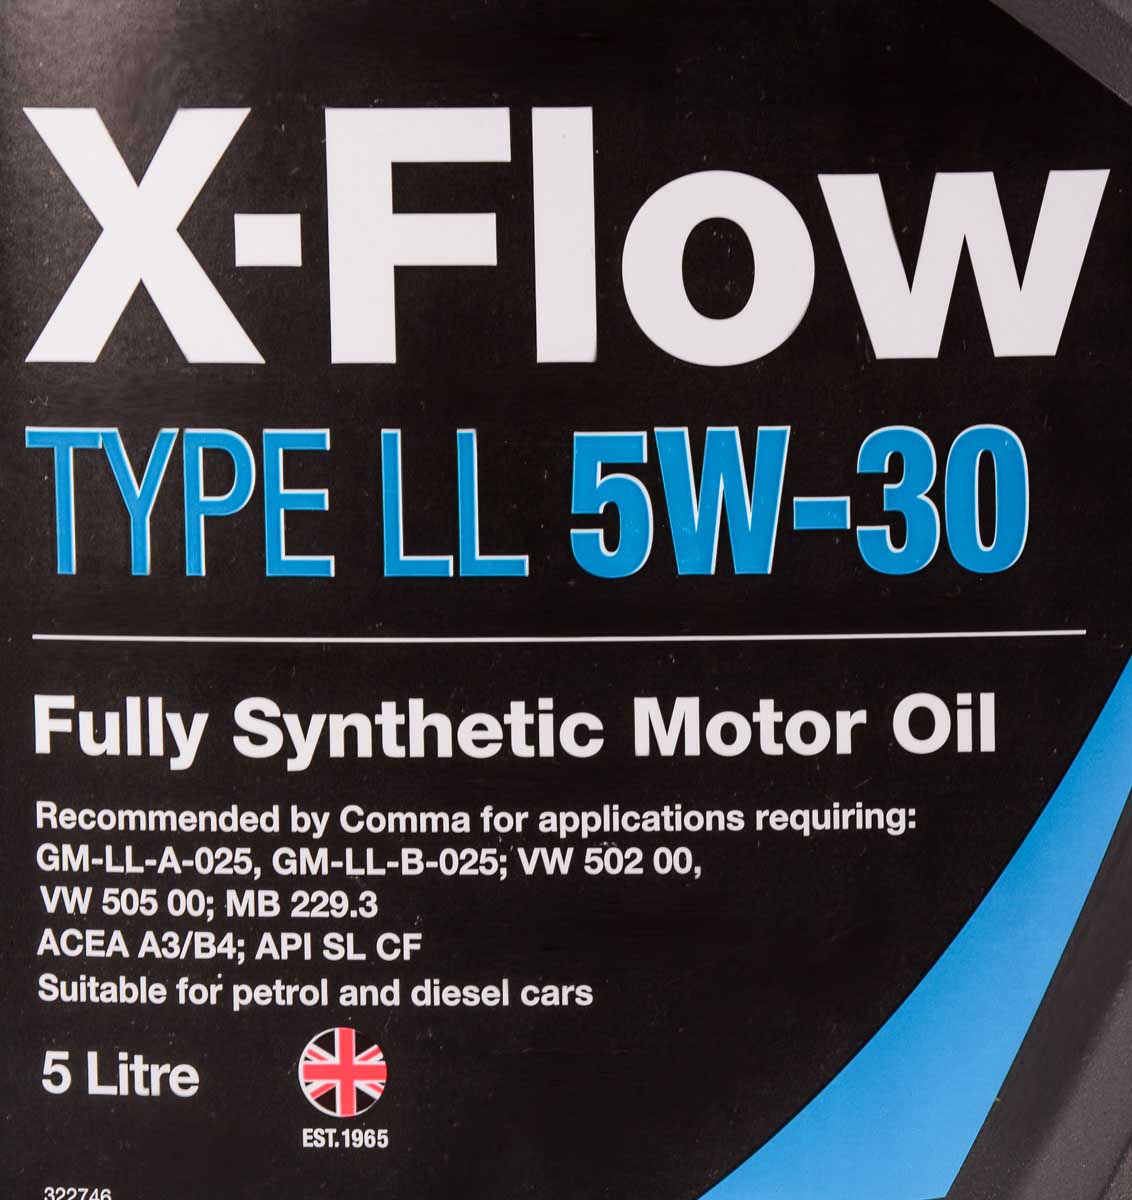 Моторна олива Comma X-Flow Type LL 5W-30 для Lexus RC 5 л на Lexus RC